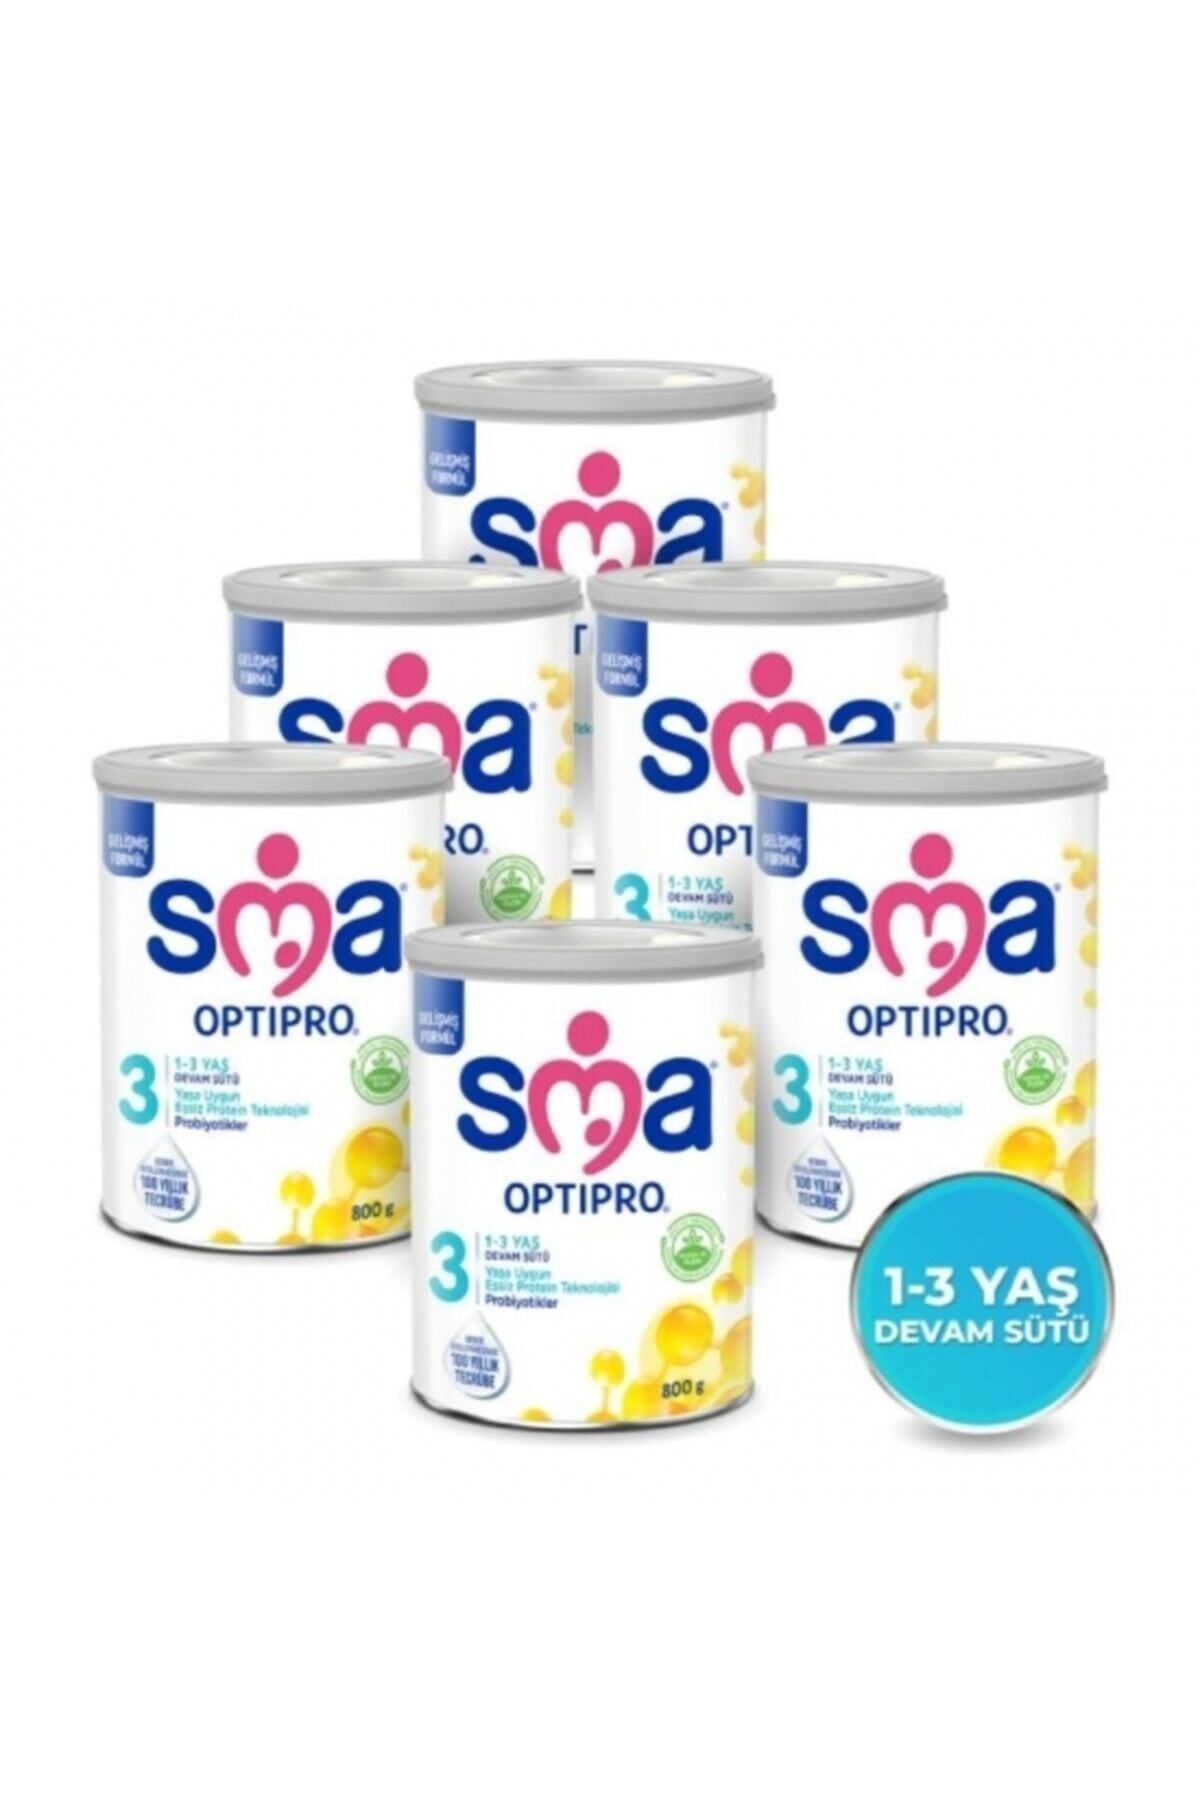 SMA 3 Optipro Probiyotik 1-3 Yaş Devam Sütü 800 gr - 6 Lü